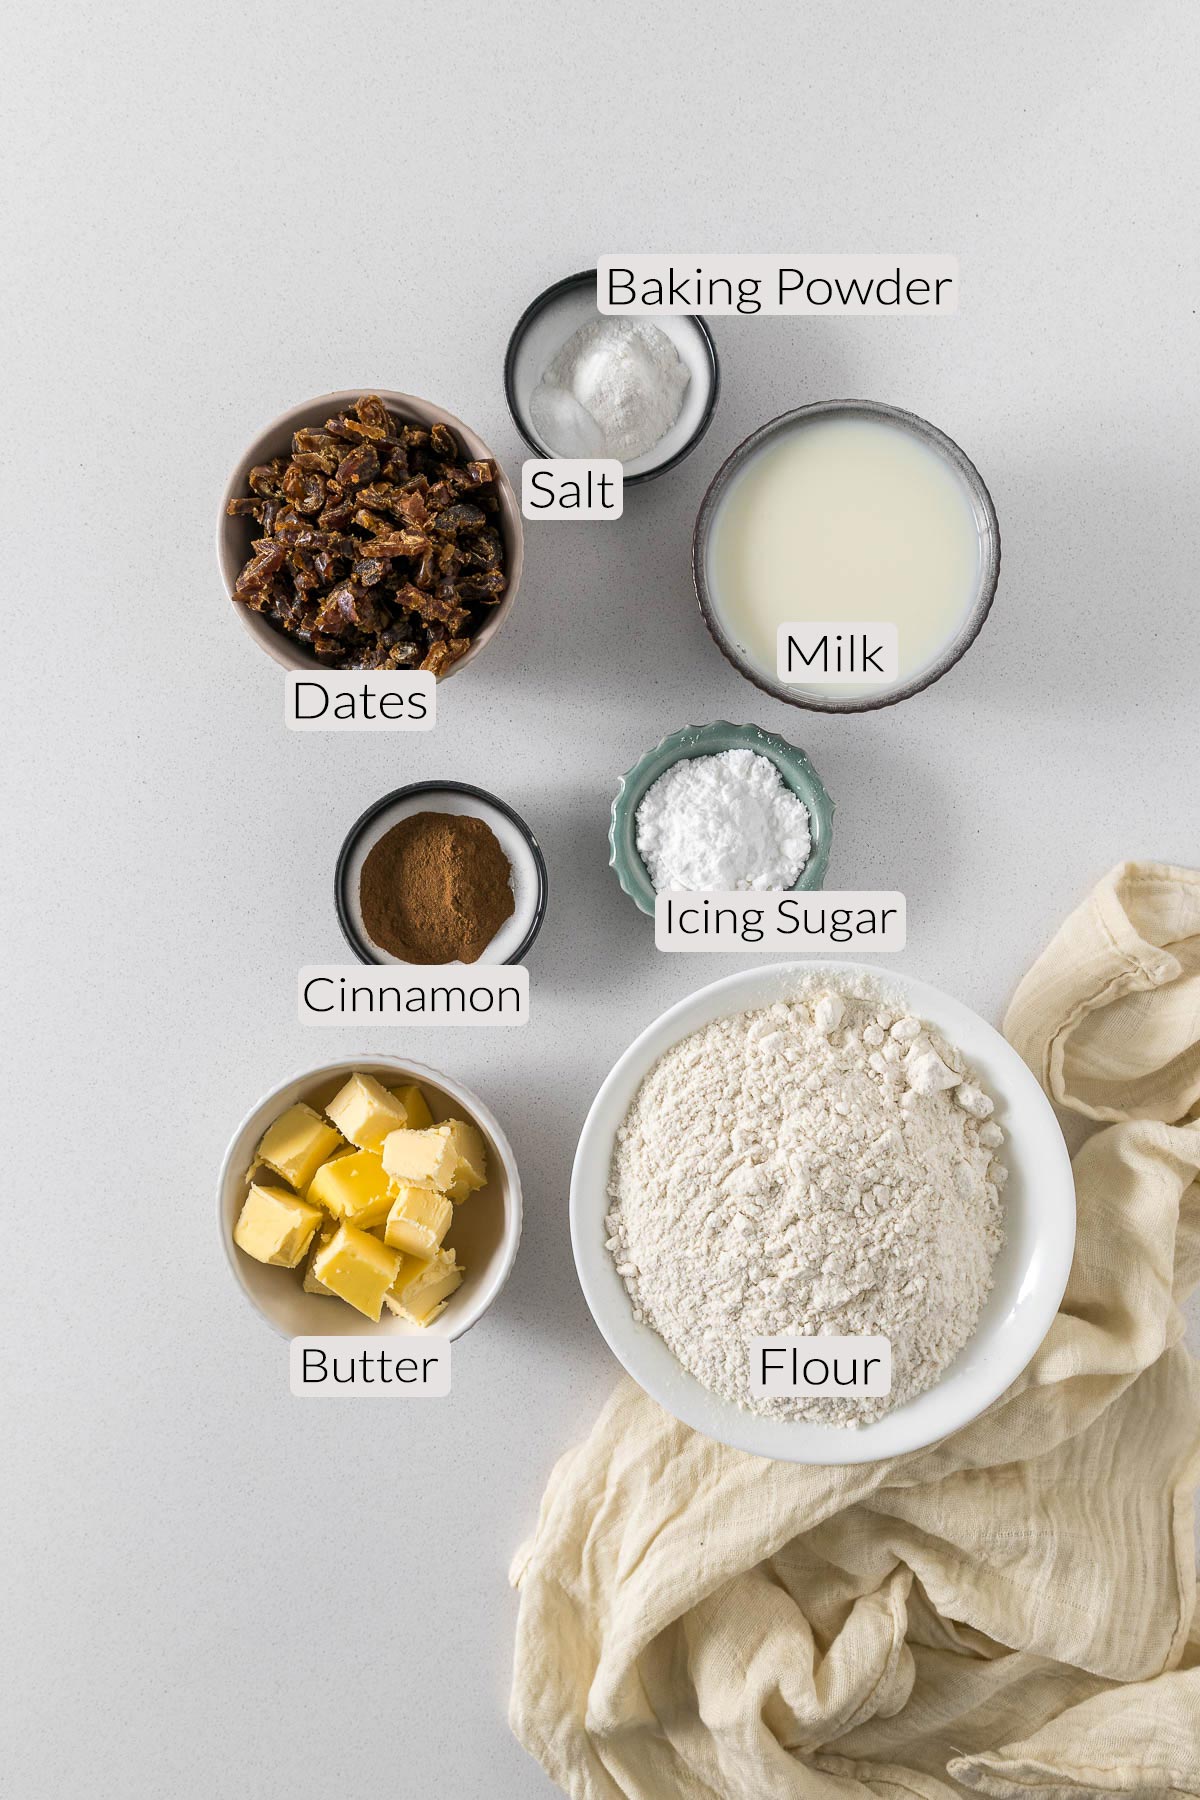 Date scone ingredients - flour, butter, milk, dates, cinnamon, icing sugar, baking powder, and salt.